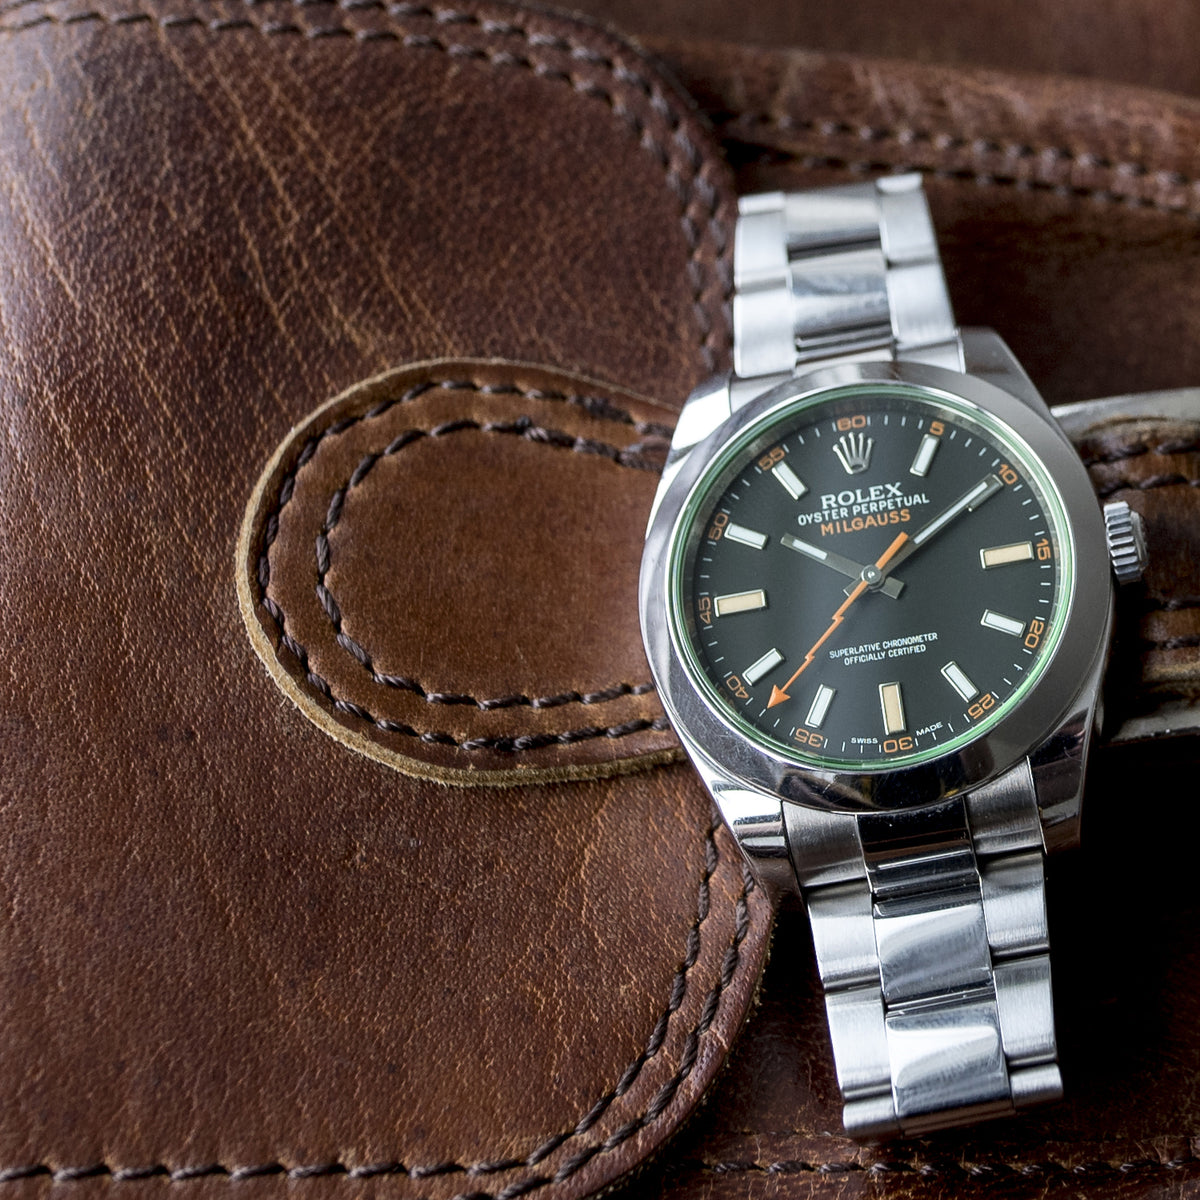 Rolex Milgauss, A Really Cool Geeks Watch?